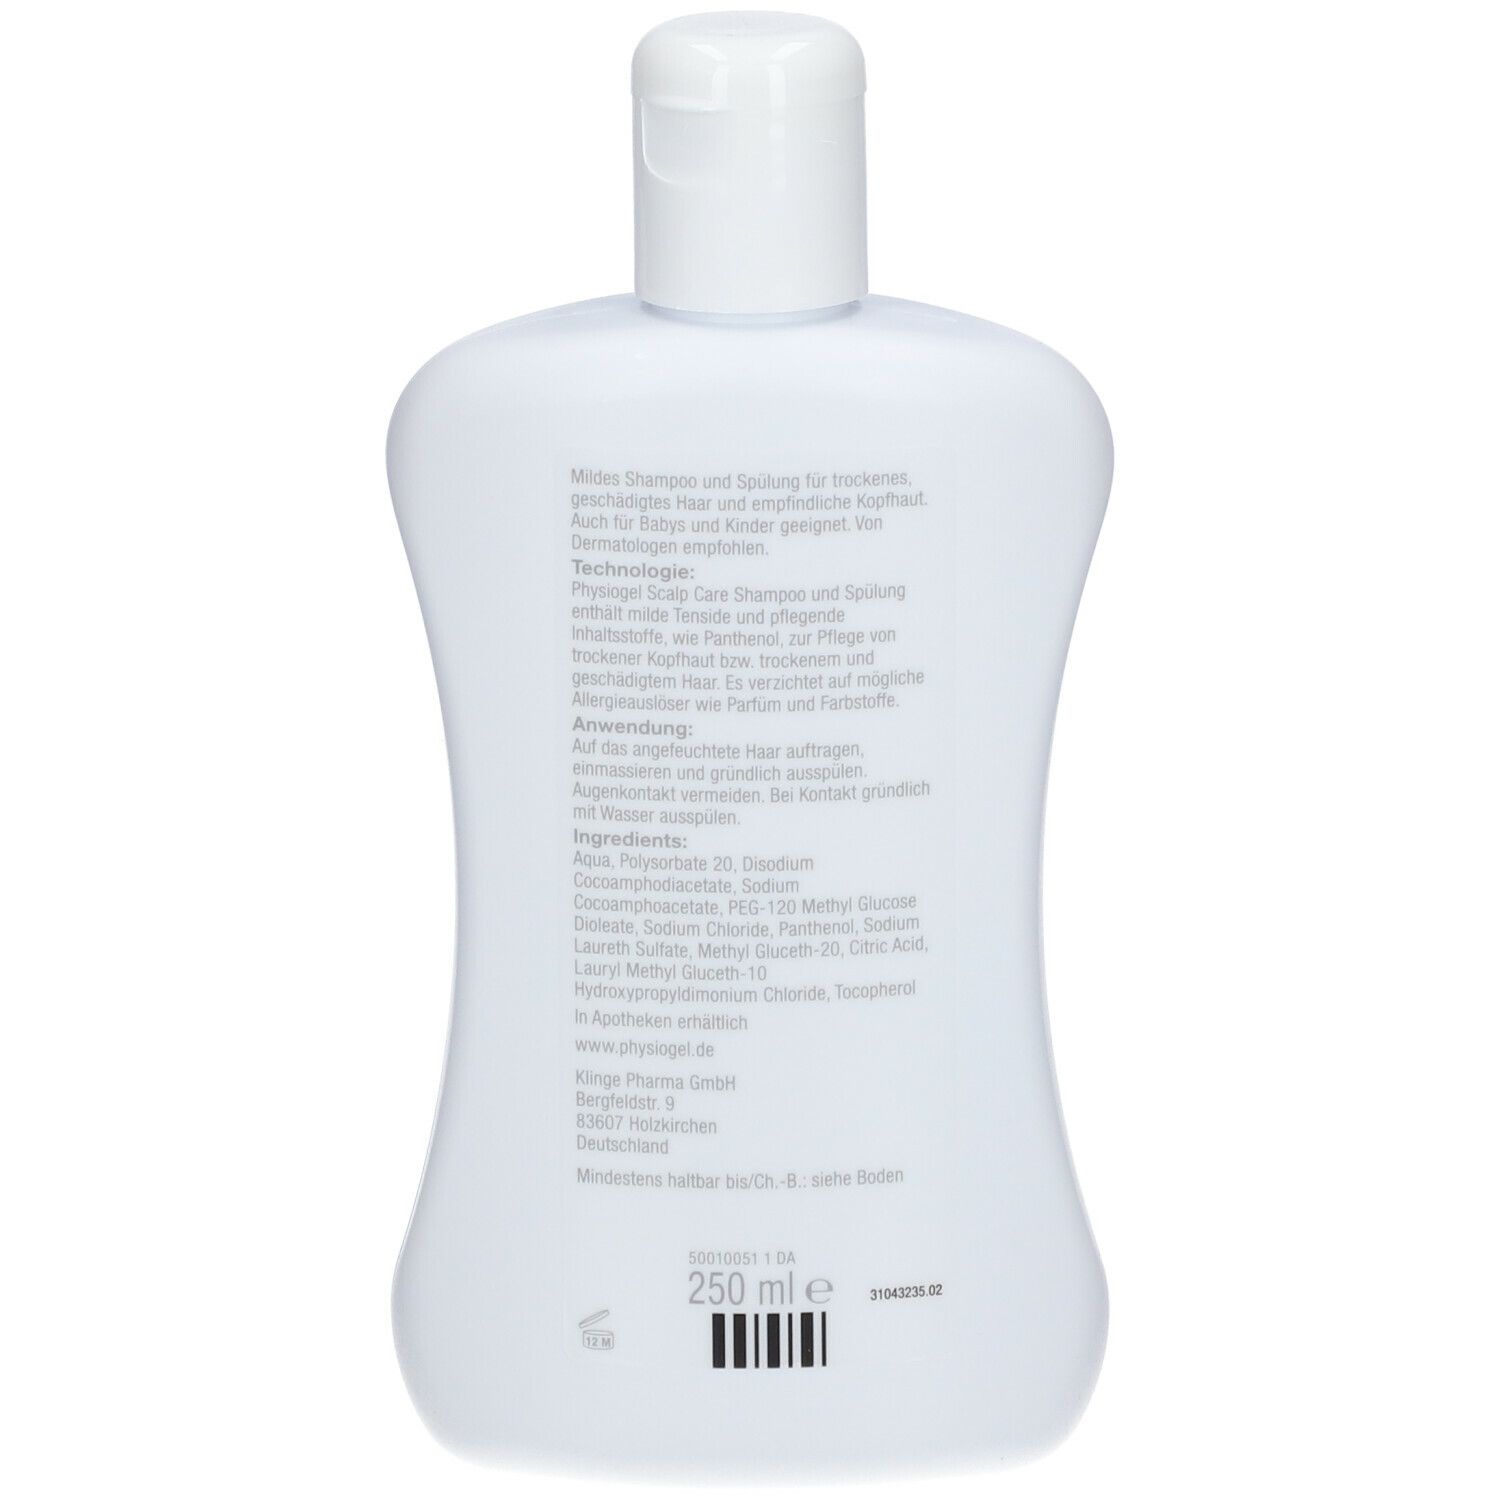 PHYSIOGEL® Scalp Care Shampoo und Spülung 250ml - empfindliche Kopfhaut